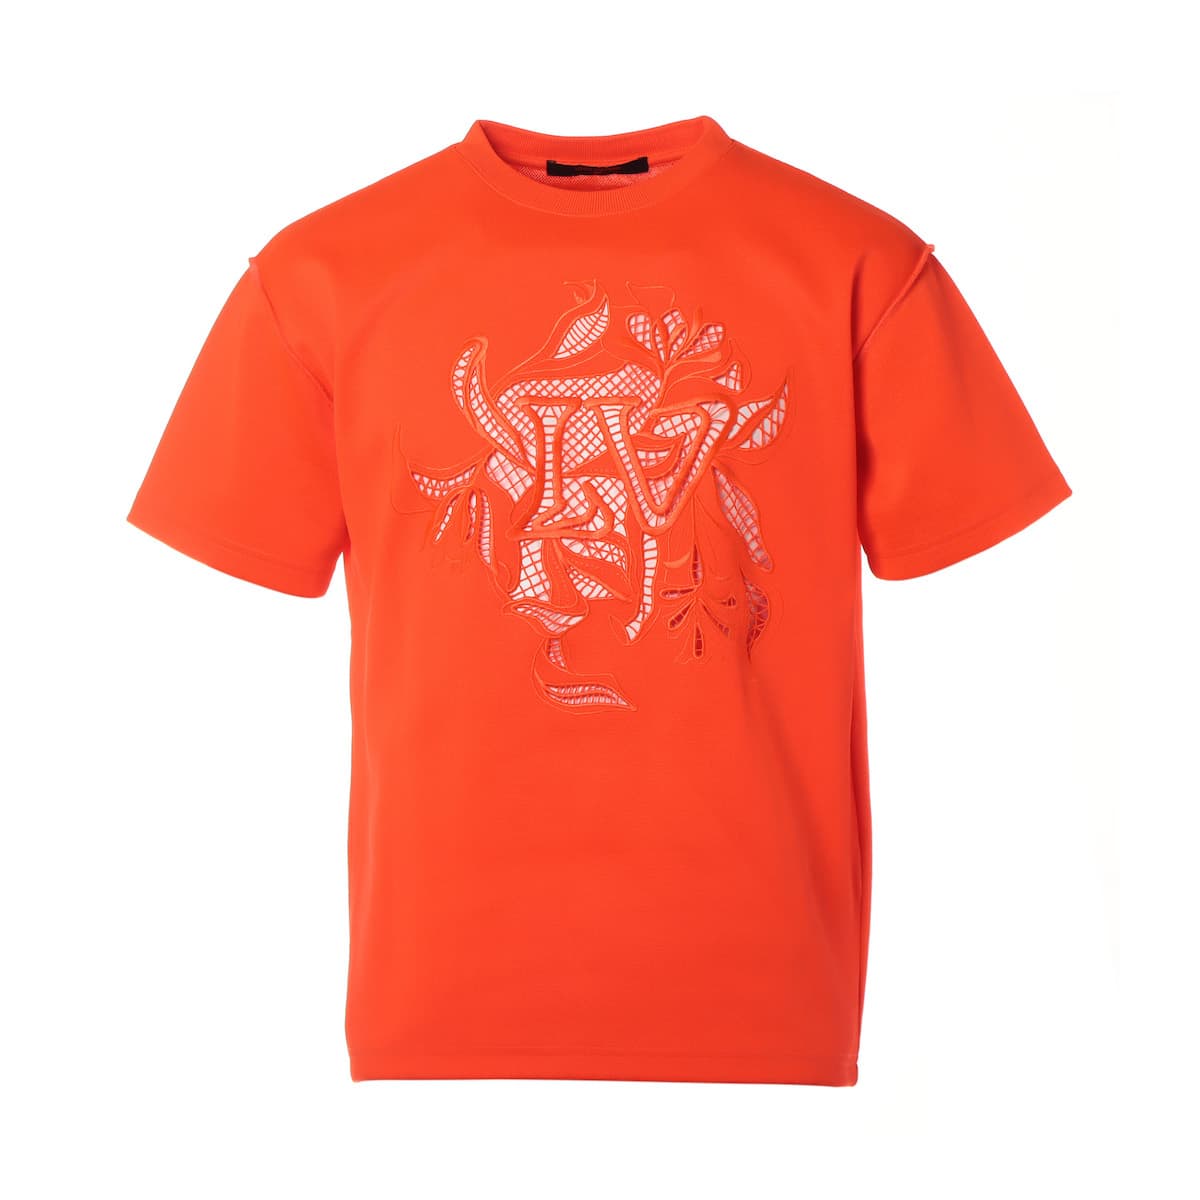 ルイヴィトン 20SS ポリエステル×コットン Tシャツ XS メンズ オレンジ RM201 LVヴェジェトゥルレースエンブロイダリー